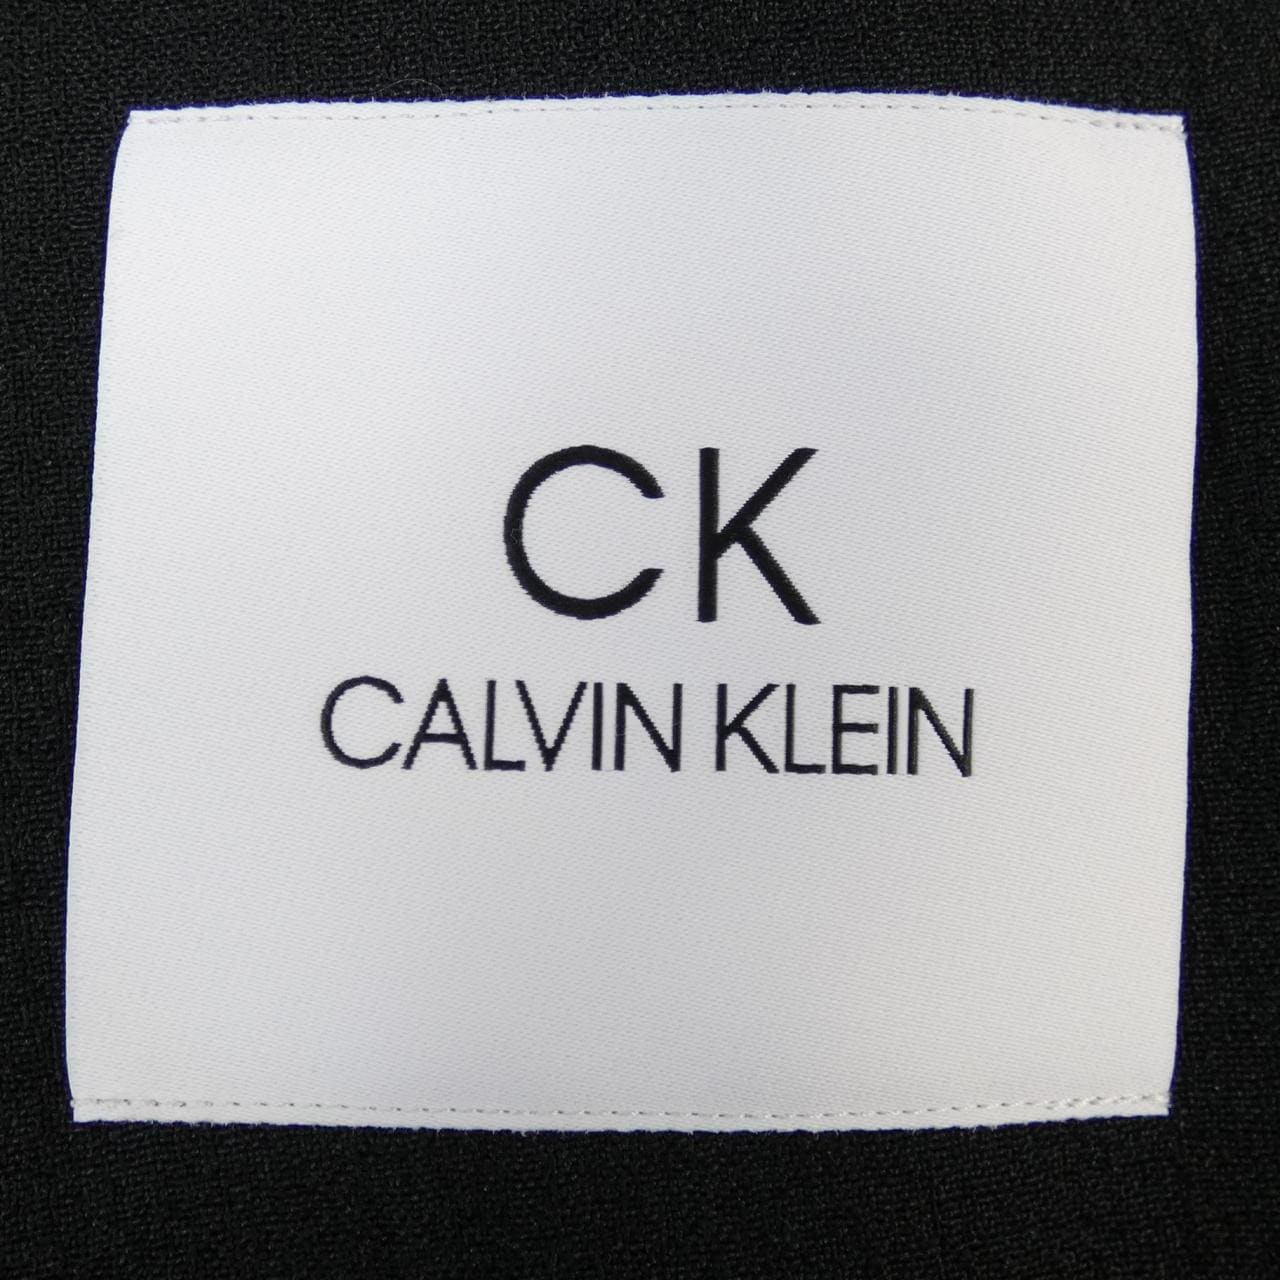 CK CK jacket